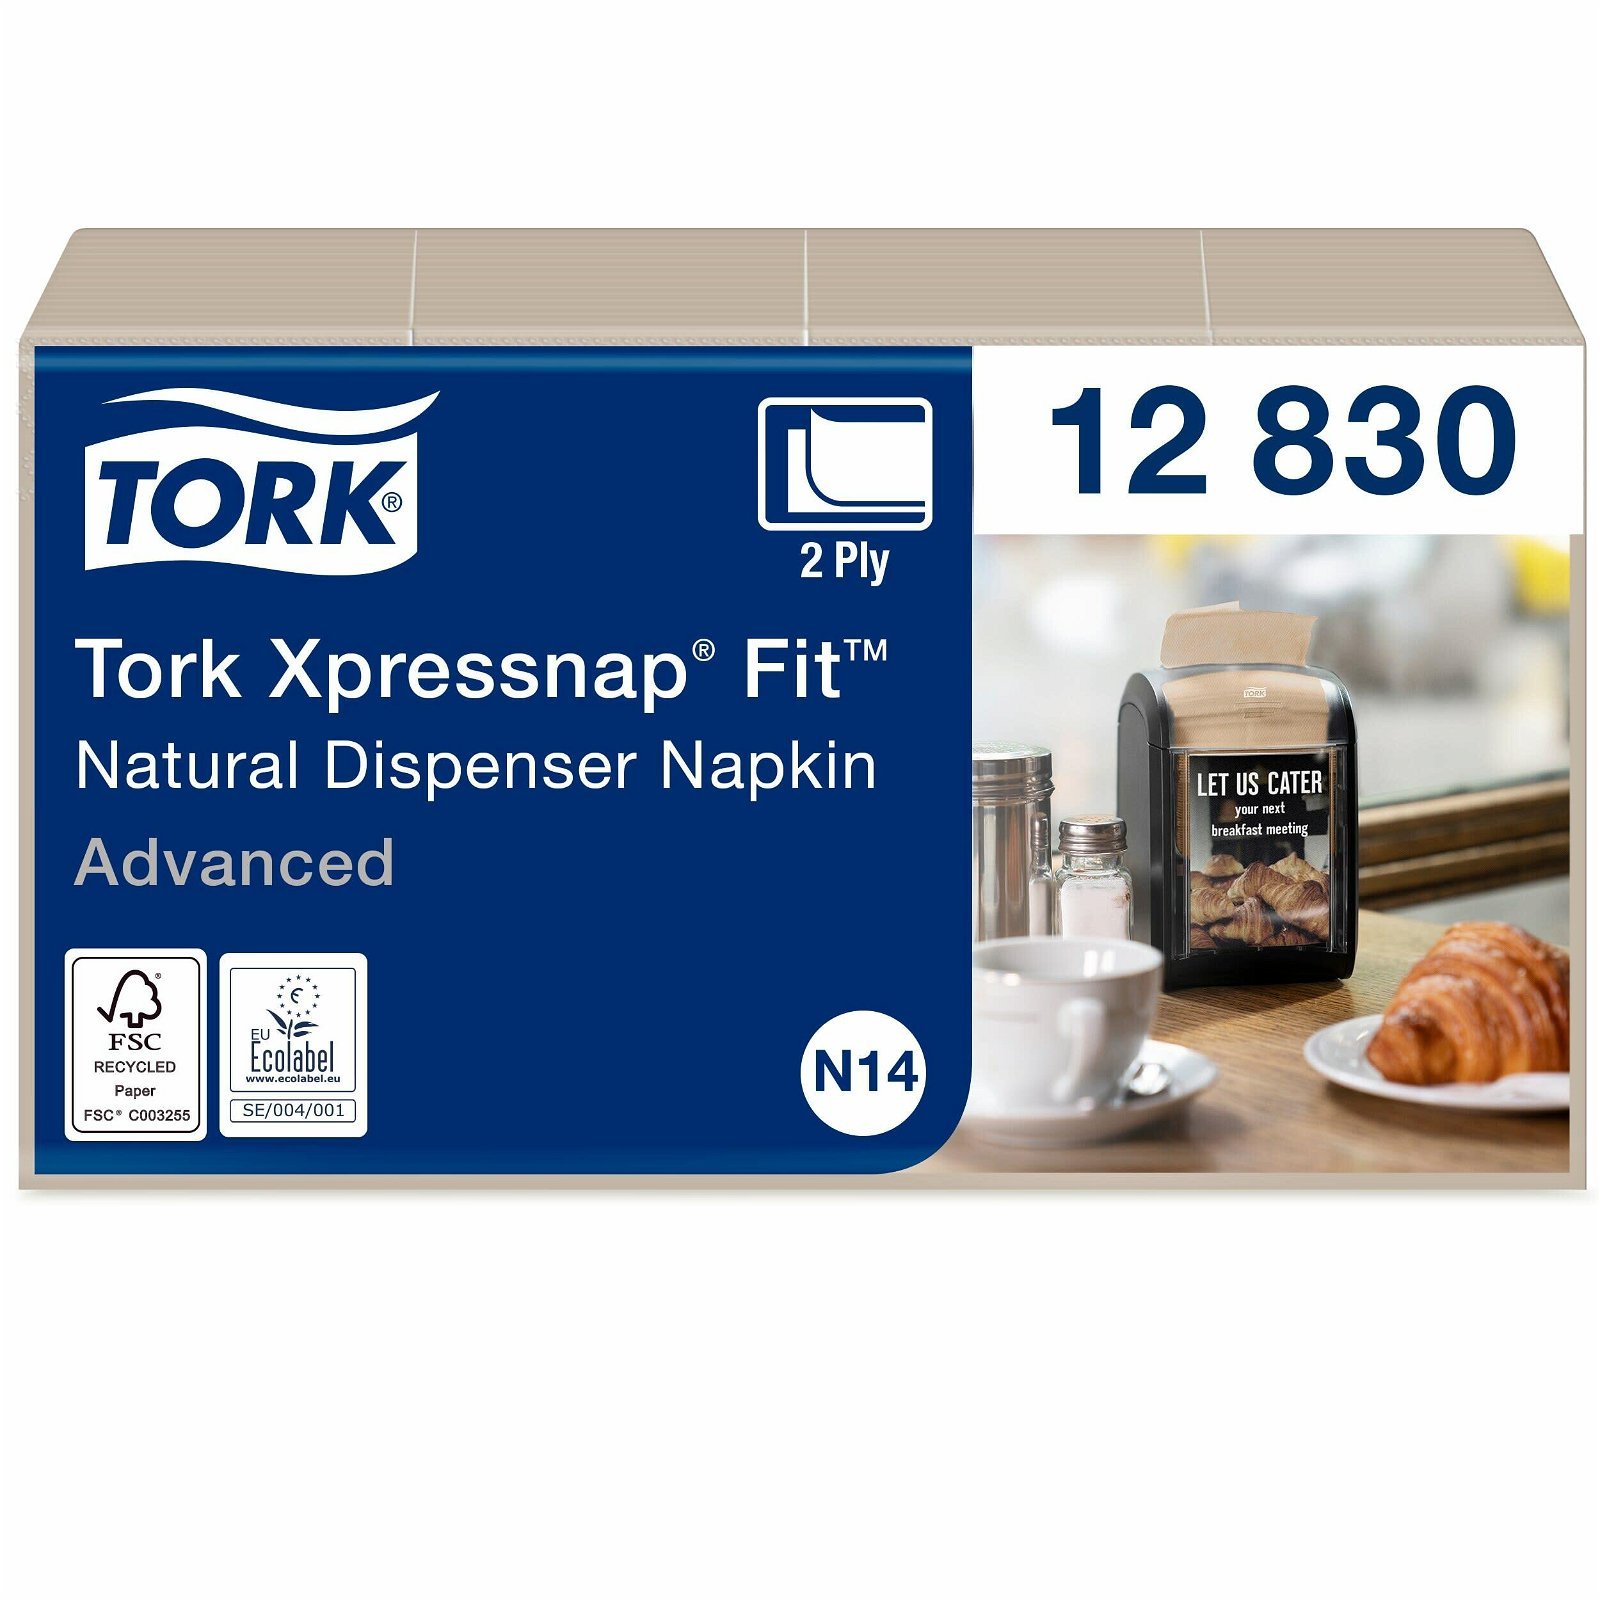 Tork Xpressnap Fit advanced servietter, N14